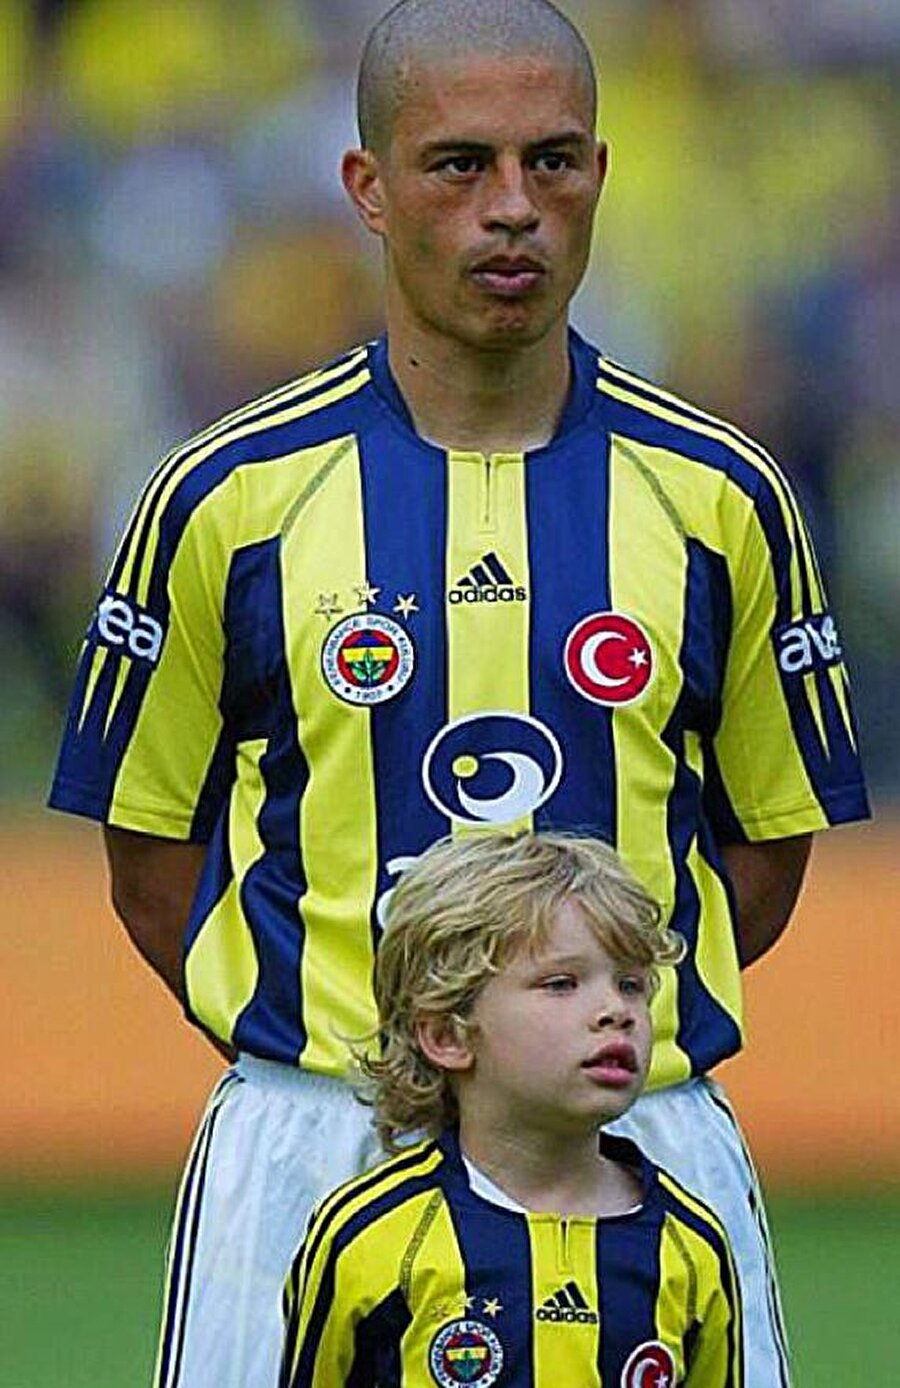 Sydney’in babasından sonra belki de en beğendiği futbolcu Alex de Souza….